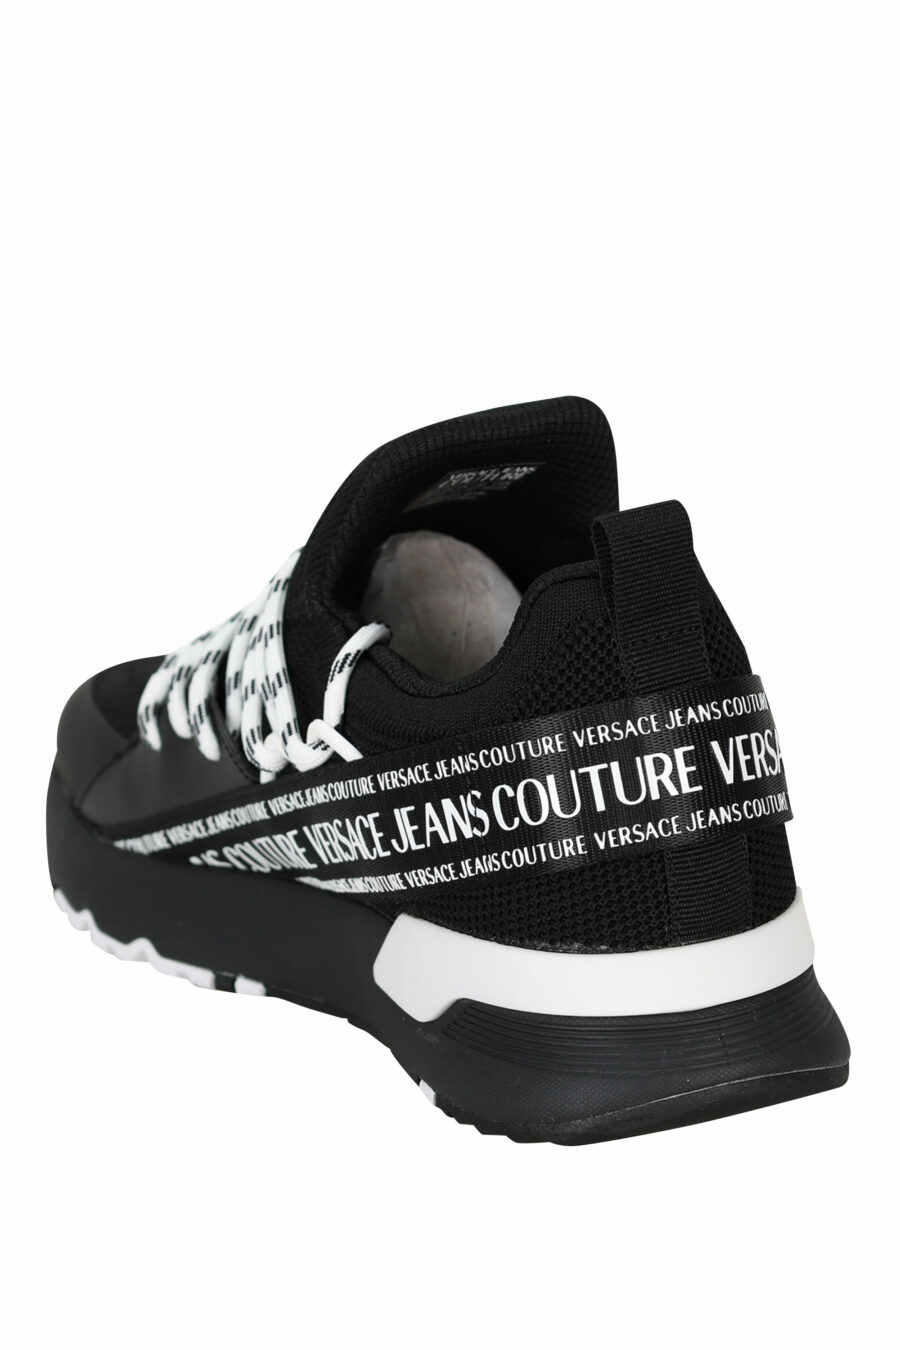 Zapatillas negras "dynamic" con minilogo en cinta y cordones bicolor - 8052019605884 3